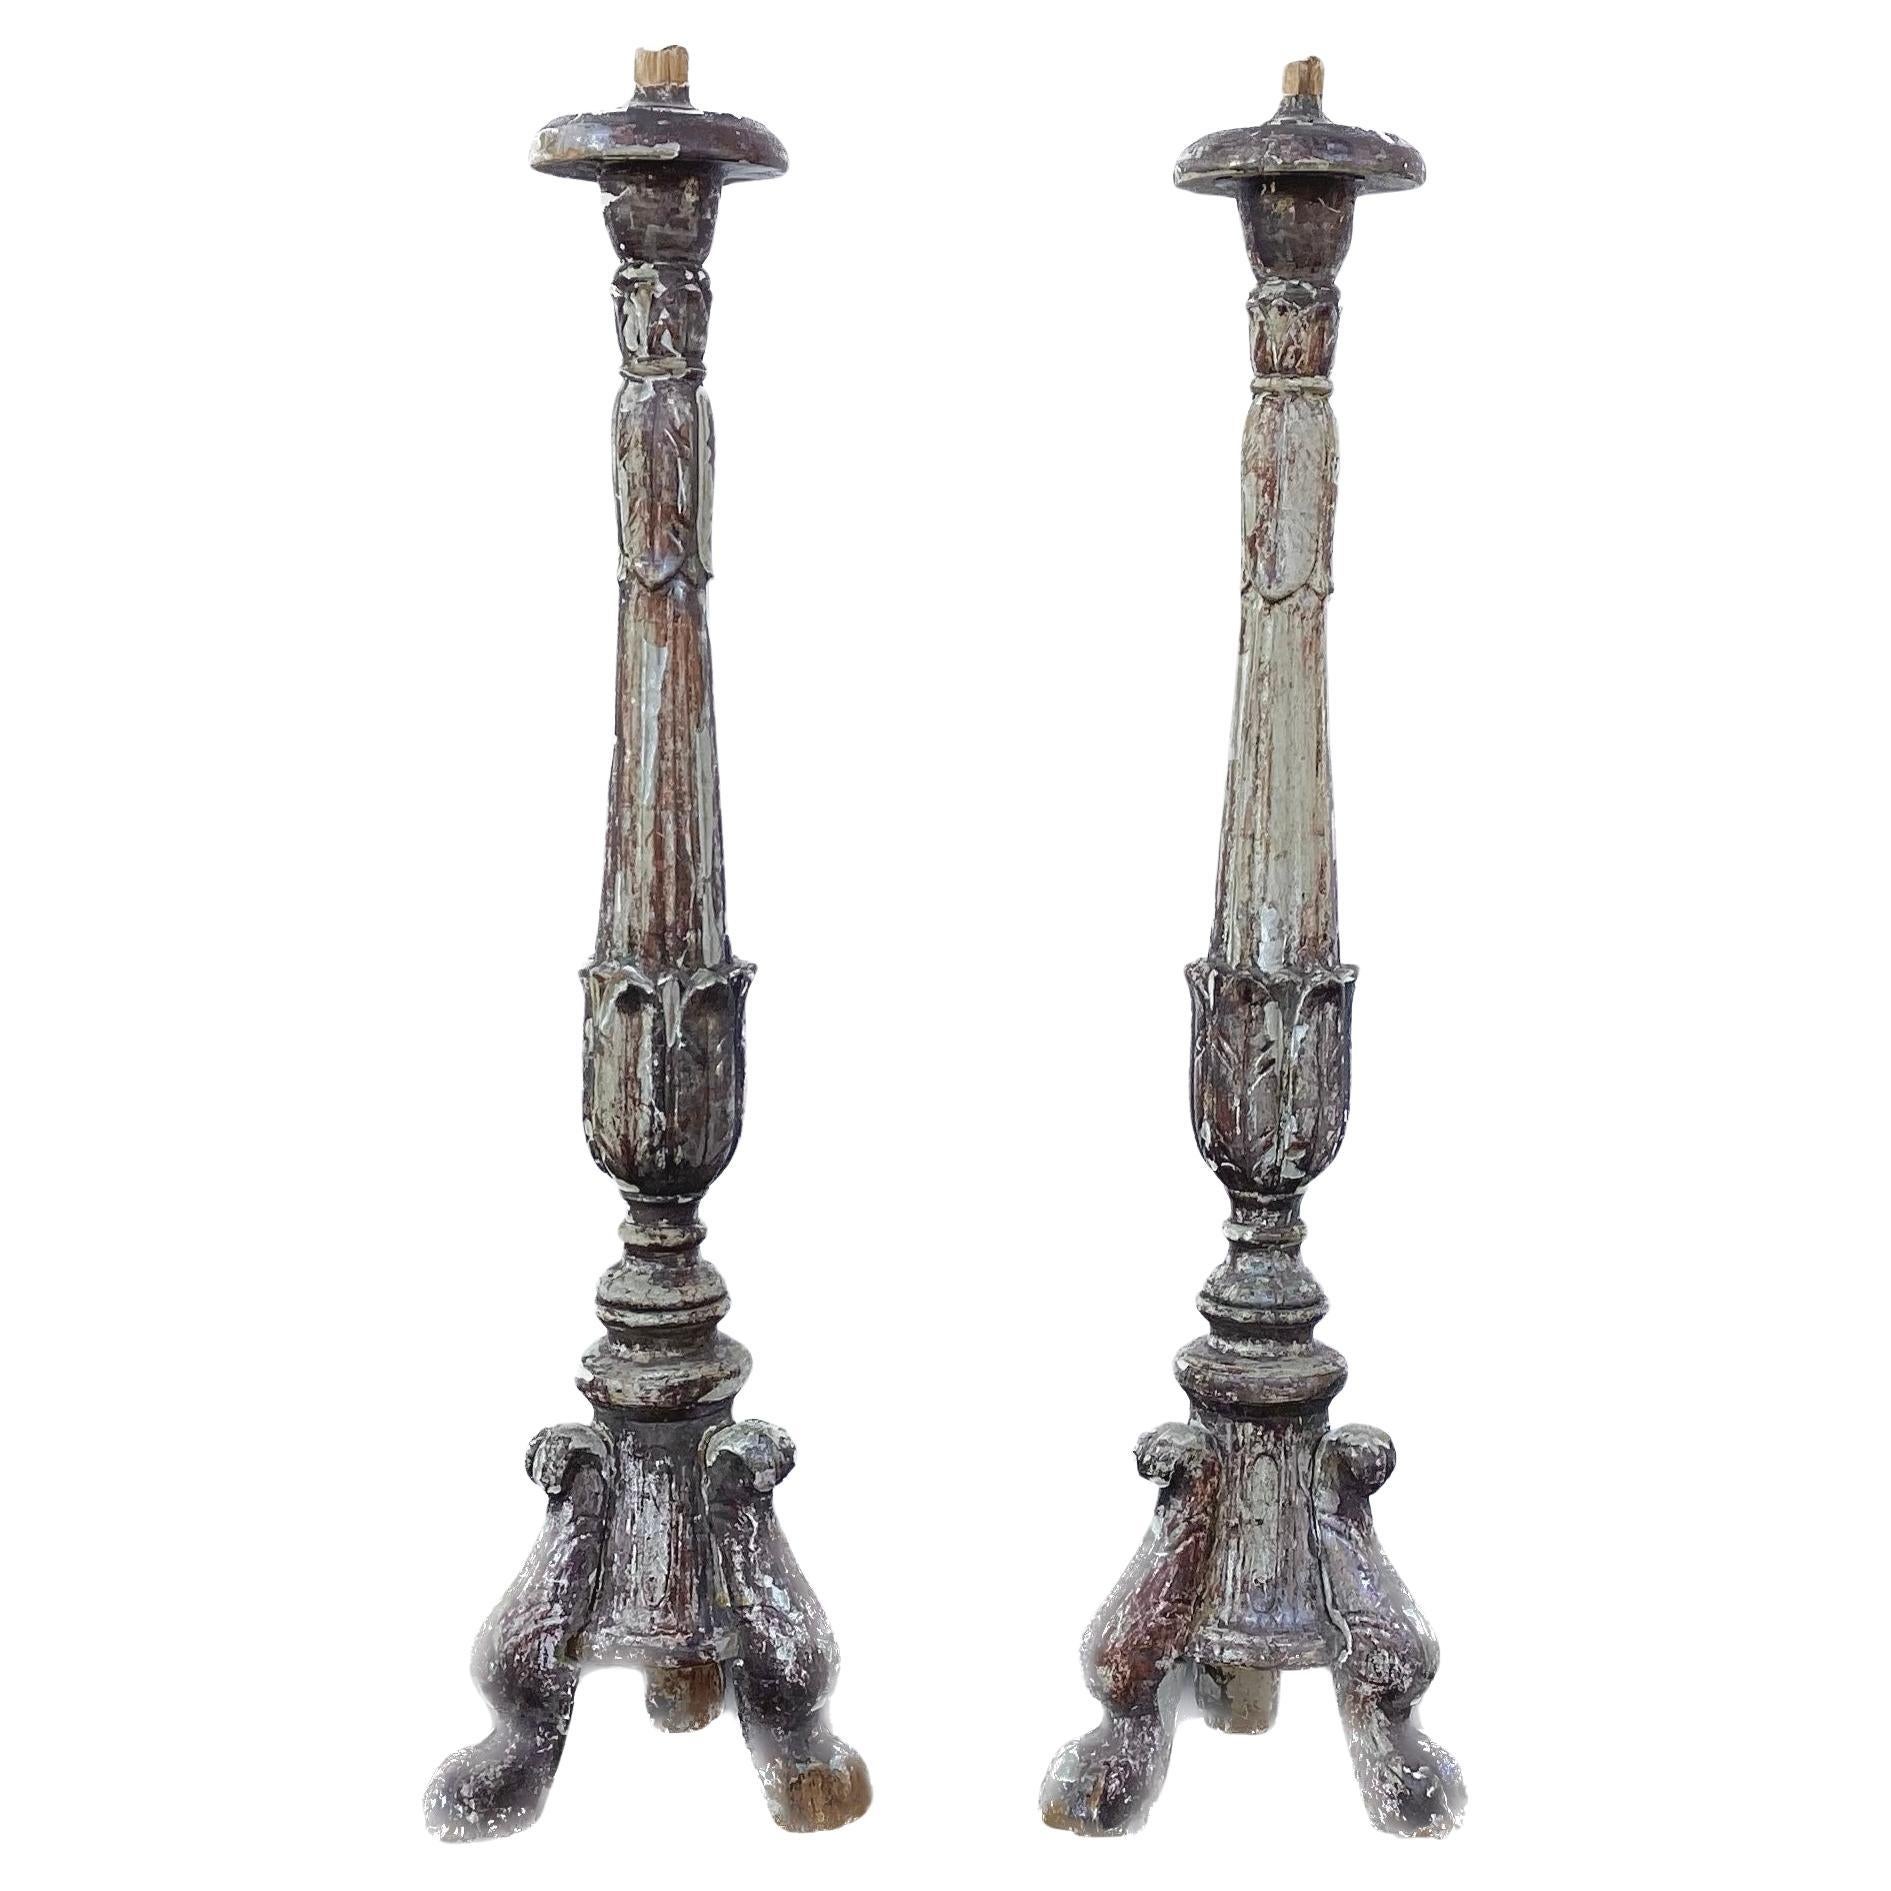 Paire de grands chandeliers italiens sculptés du 18ème siècle